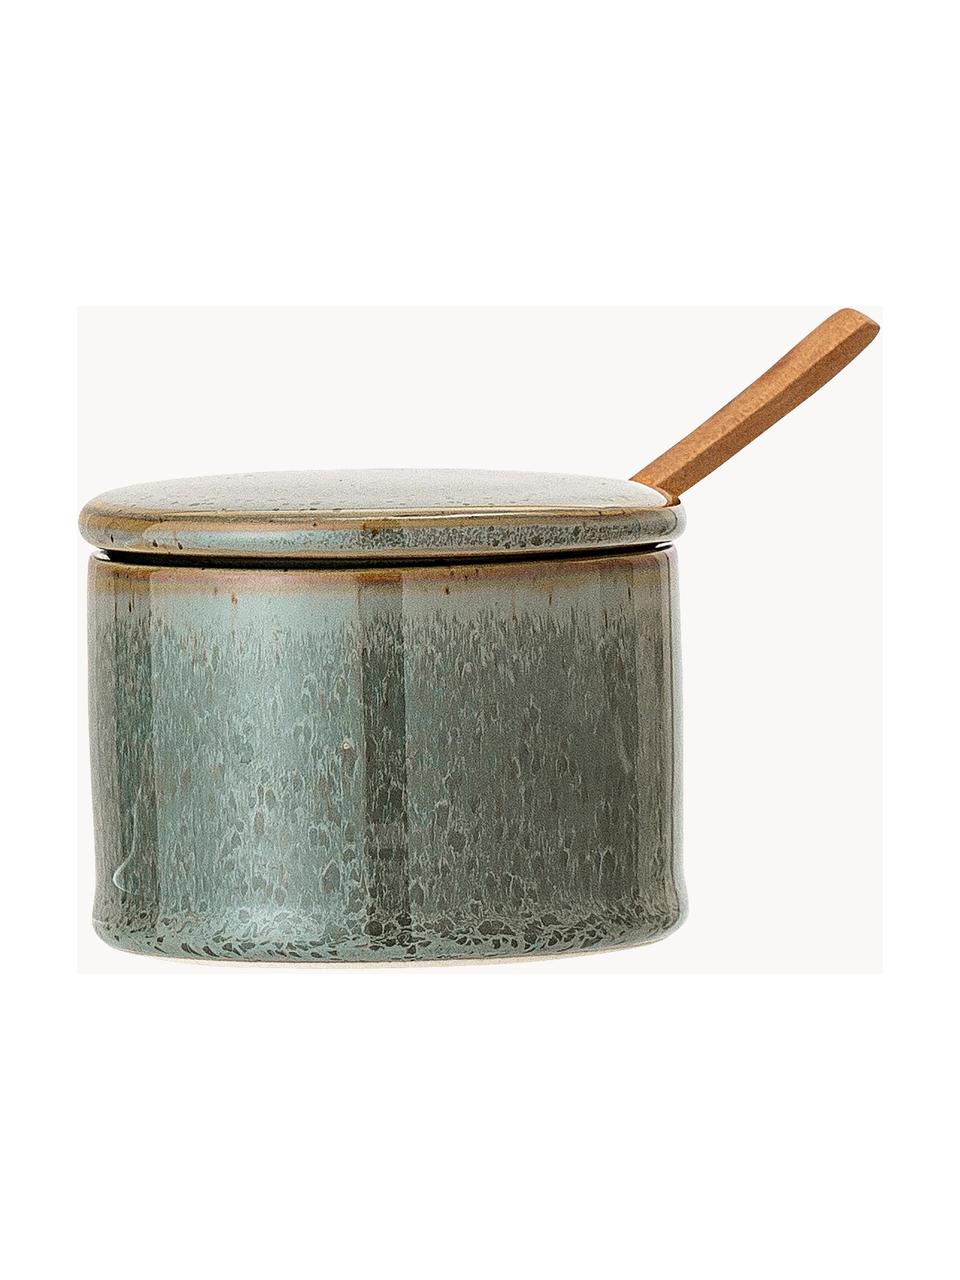 Suikerpot Pixie met houten lepel, Pot: keramiek, Lepel: acaciahout, Saliegroen, gespikkeld, Ø 8 x H 6 cm